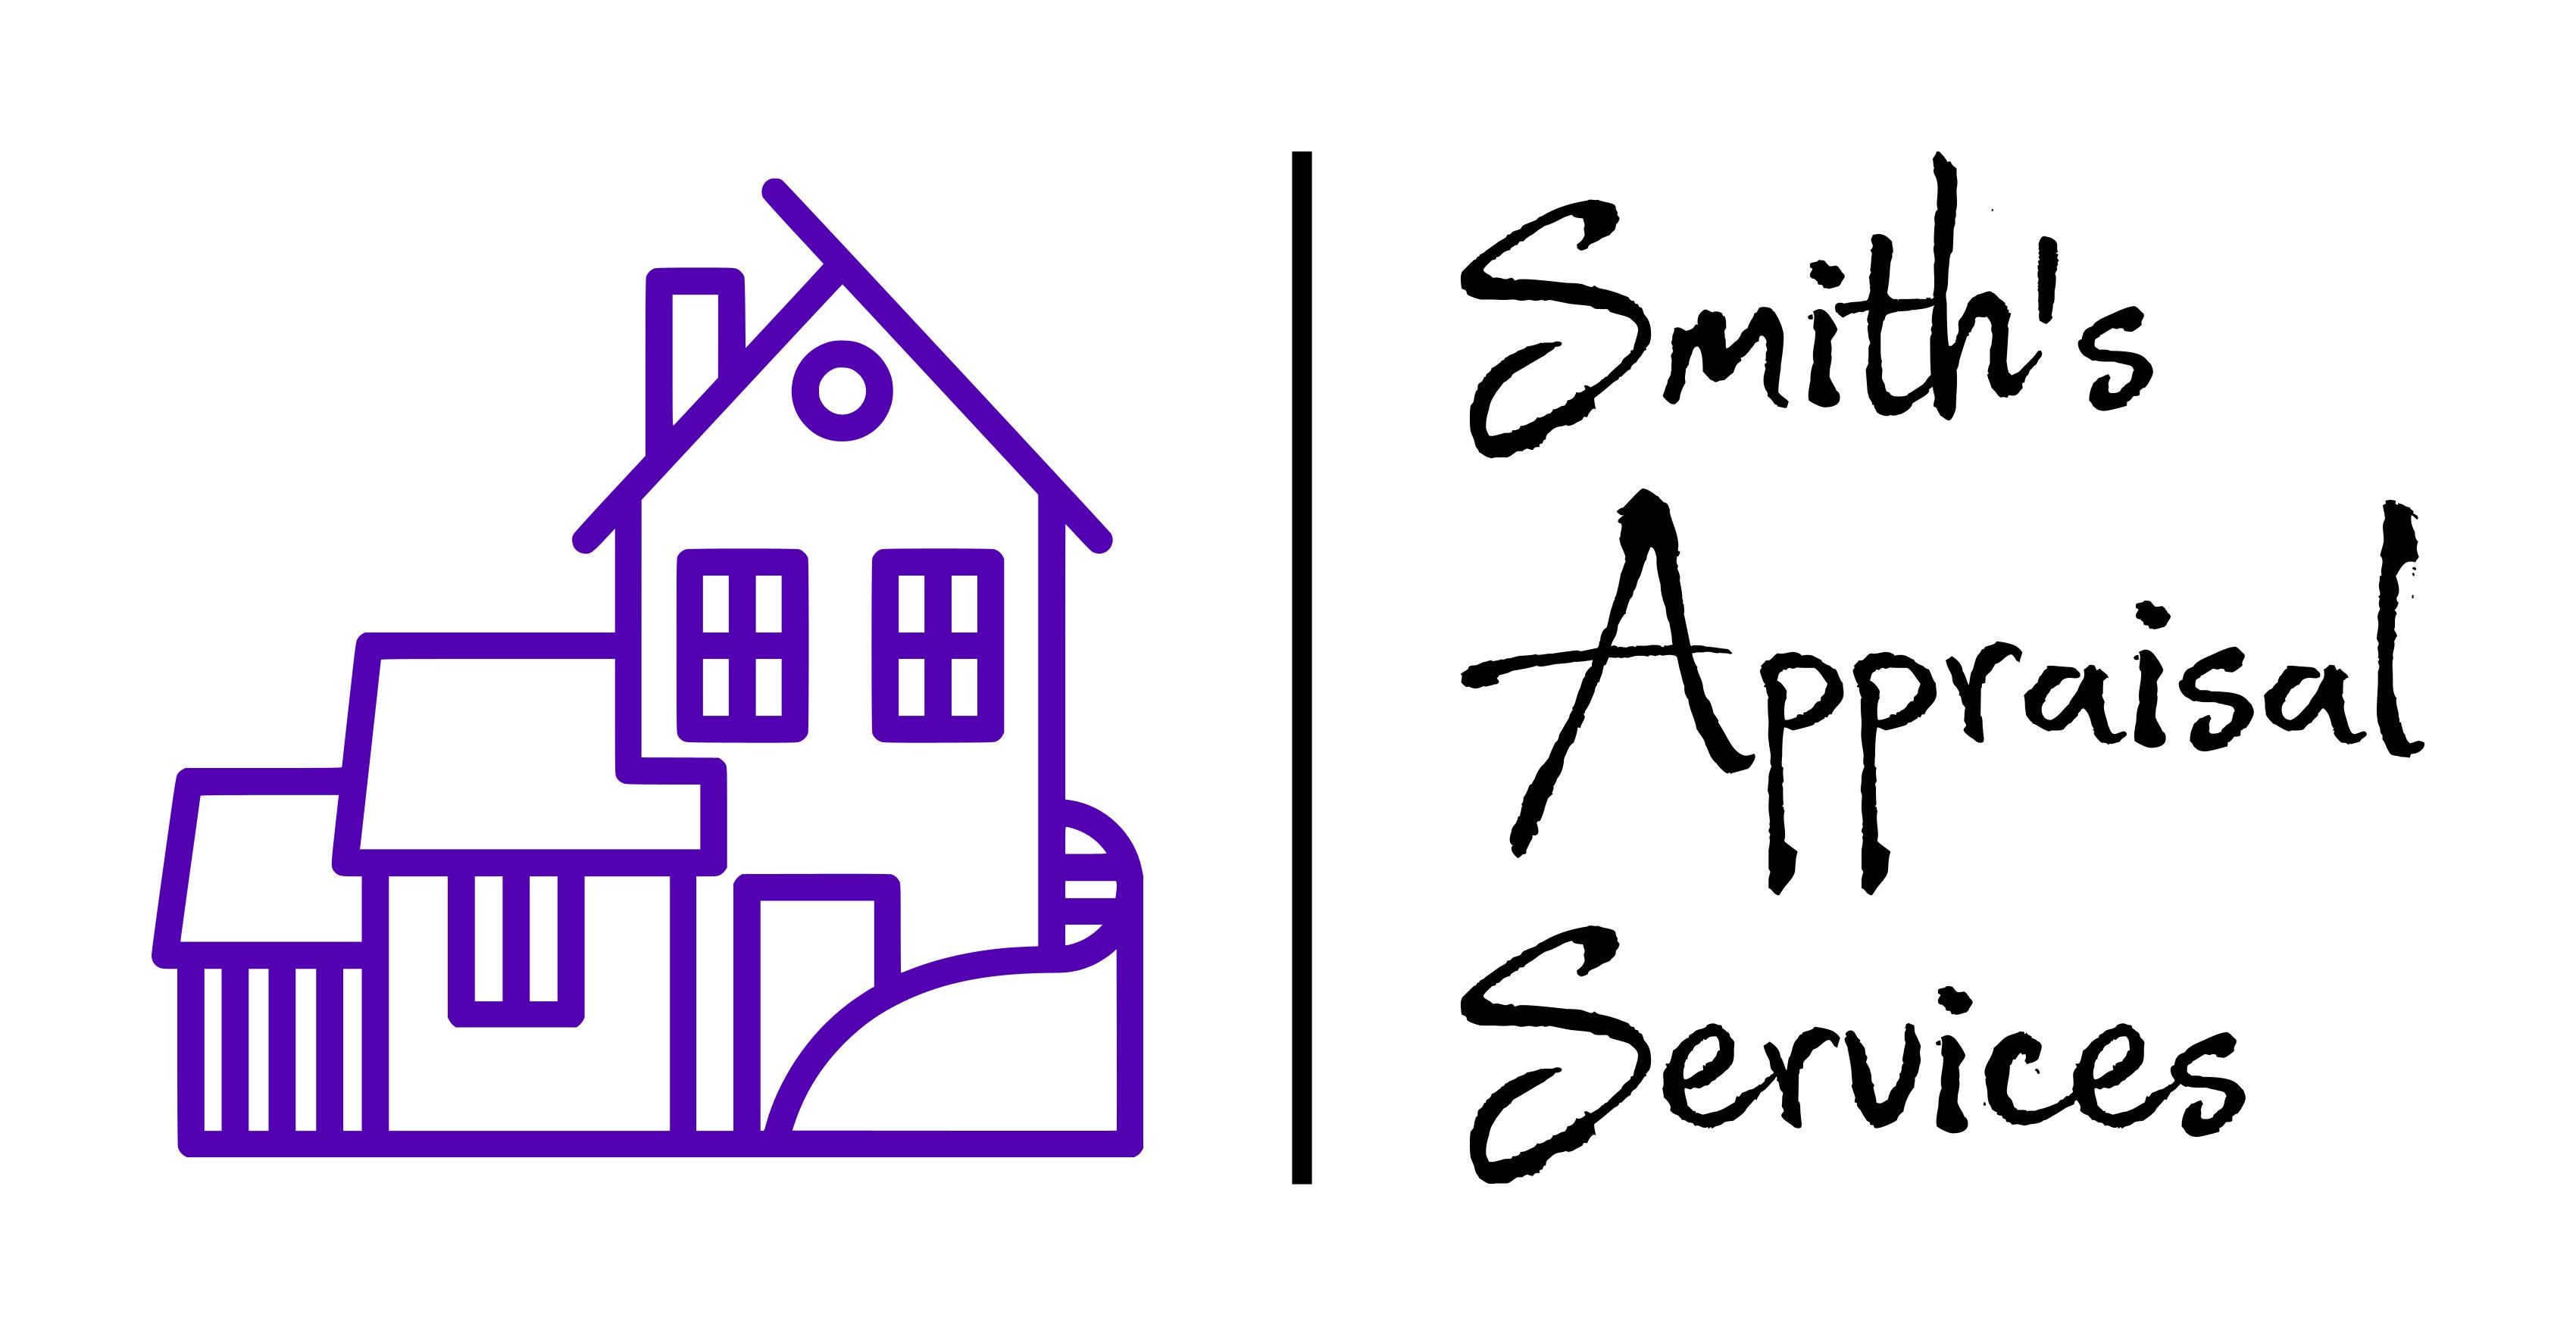 Smith's Appraisal Services Logo